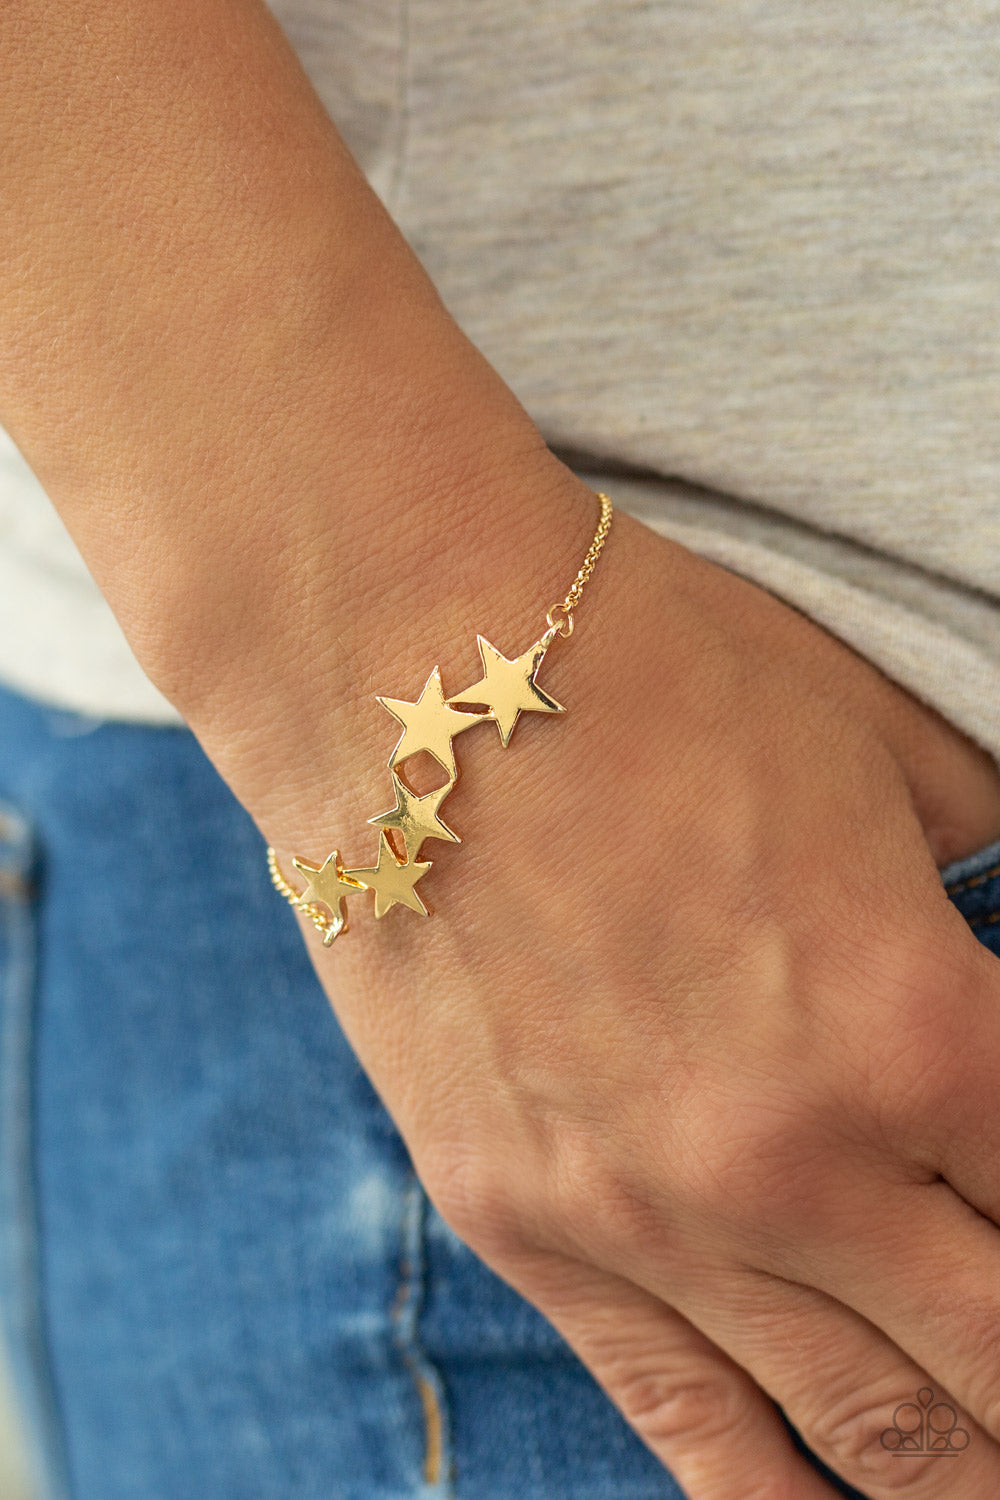 All-Star Shimmer Gold Bracelet